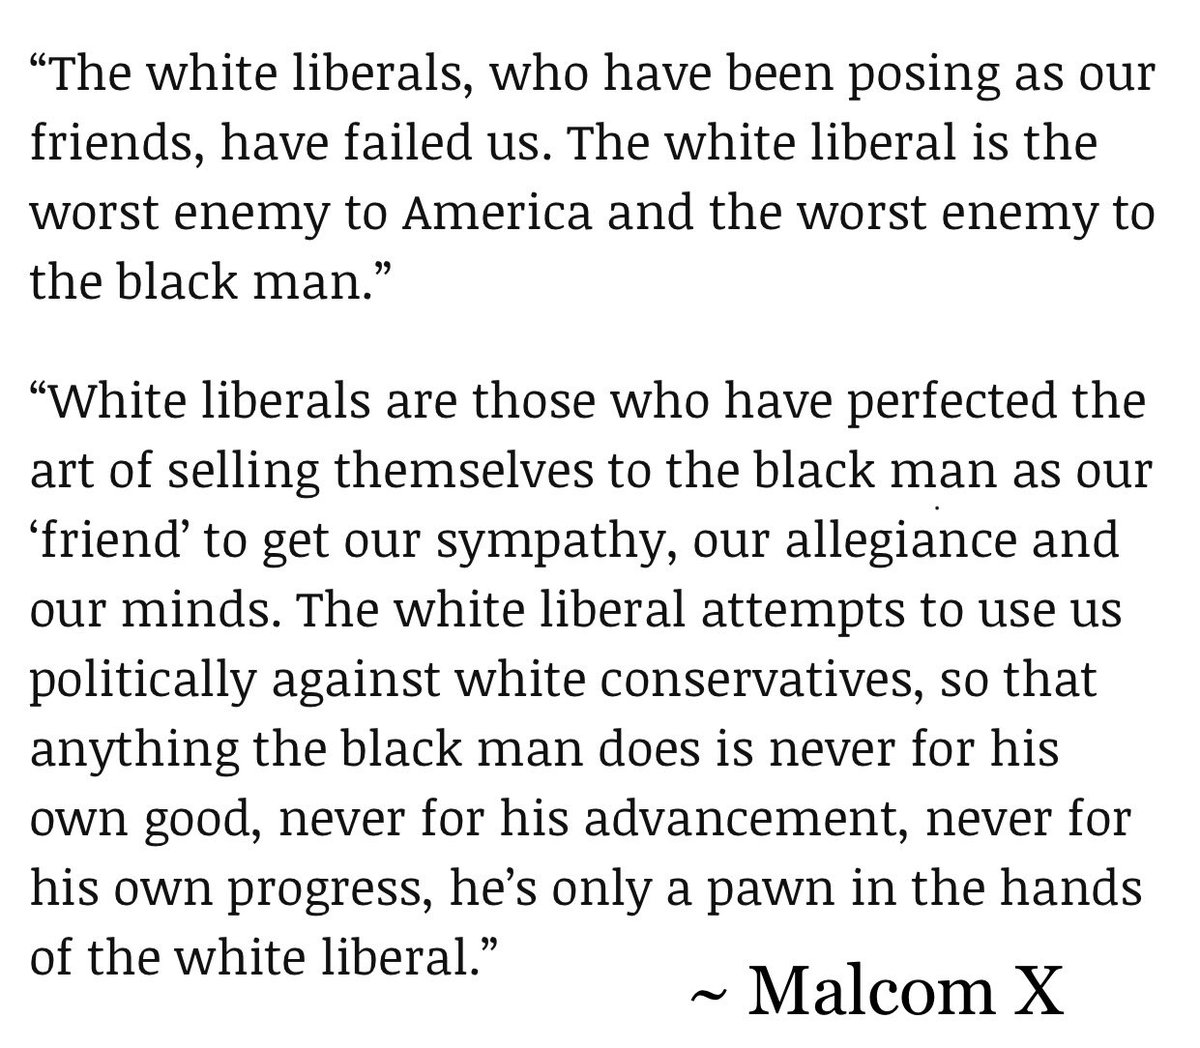 @Gibson4NYS @realDonaldTrump MalcomX said this. The man was smart.